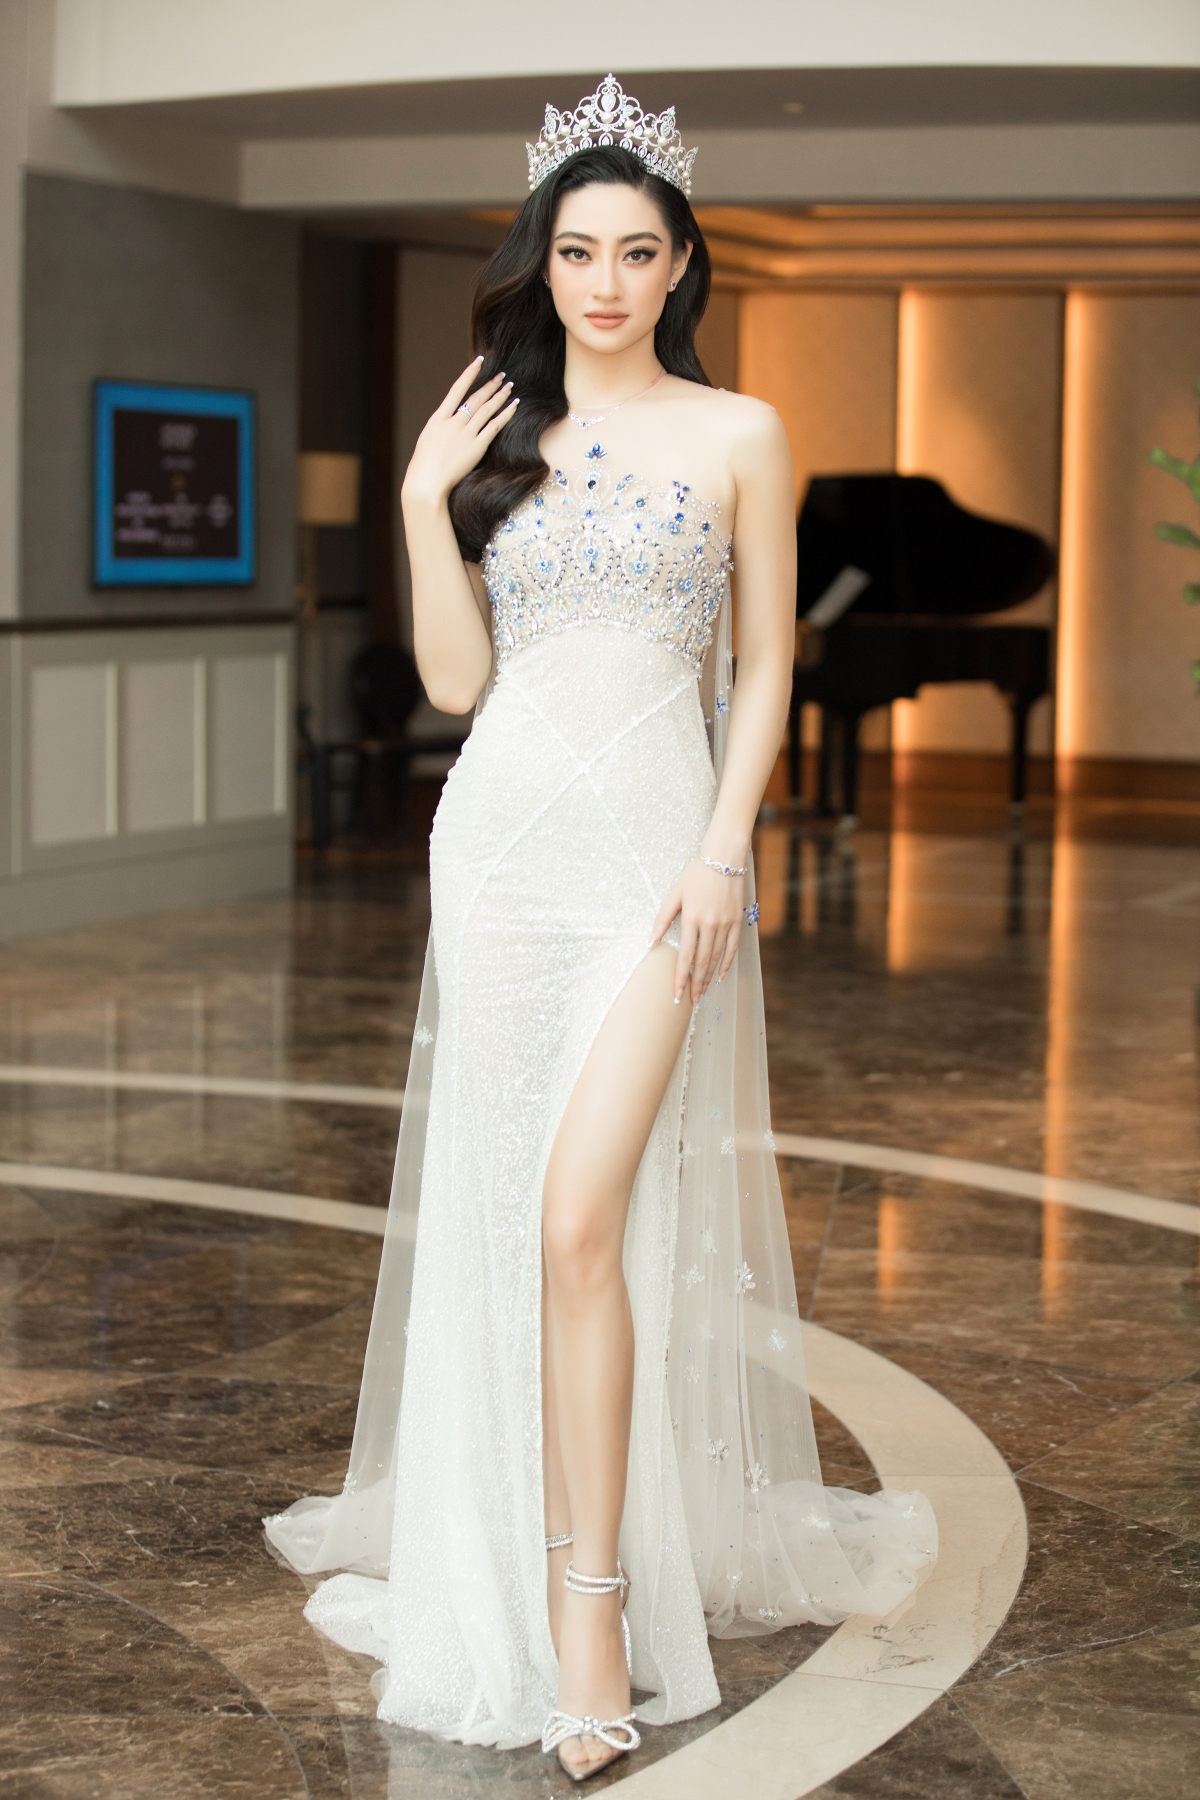 越南将主办2023年魅力小姐国际选美大赛 - 知乎